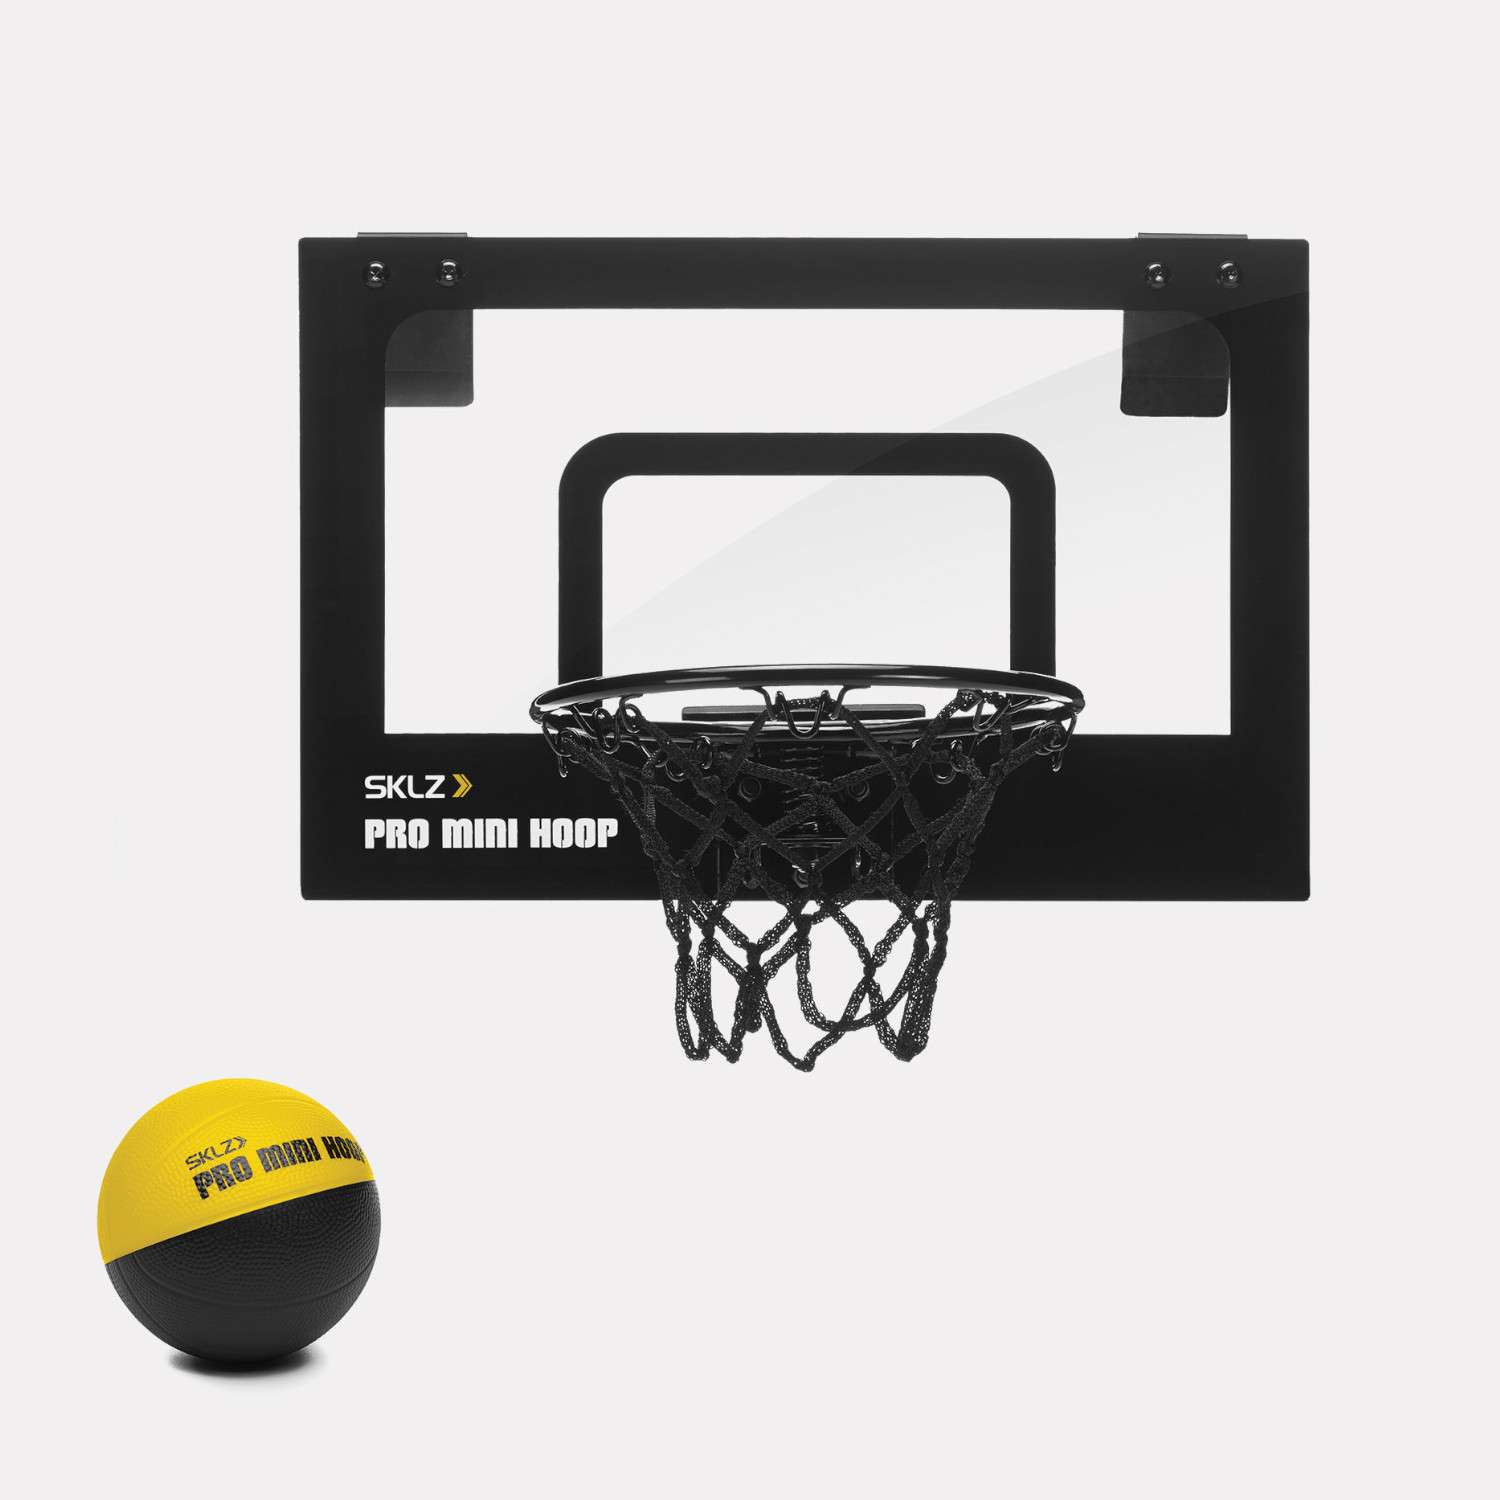 Игровой набор SKLZ баскетбольный Pro Mini Hoop Micro - фото 1